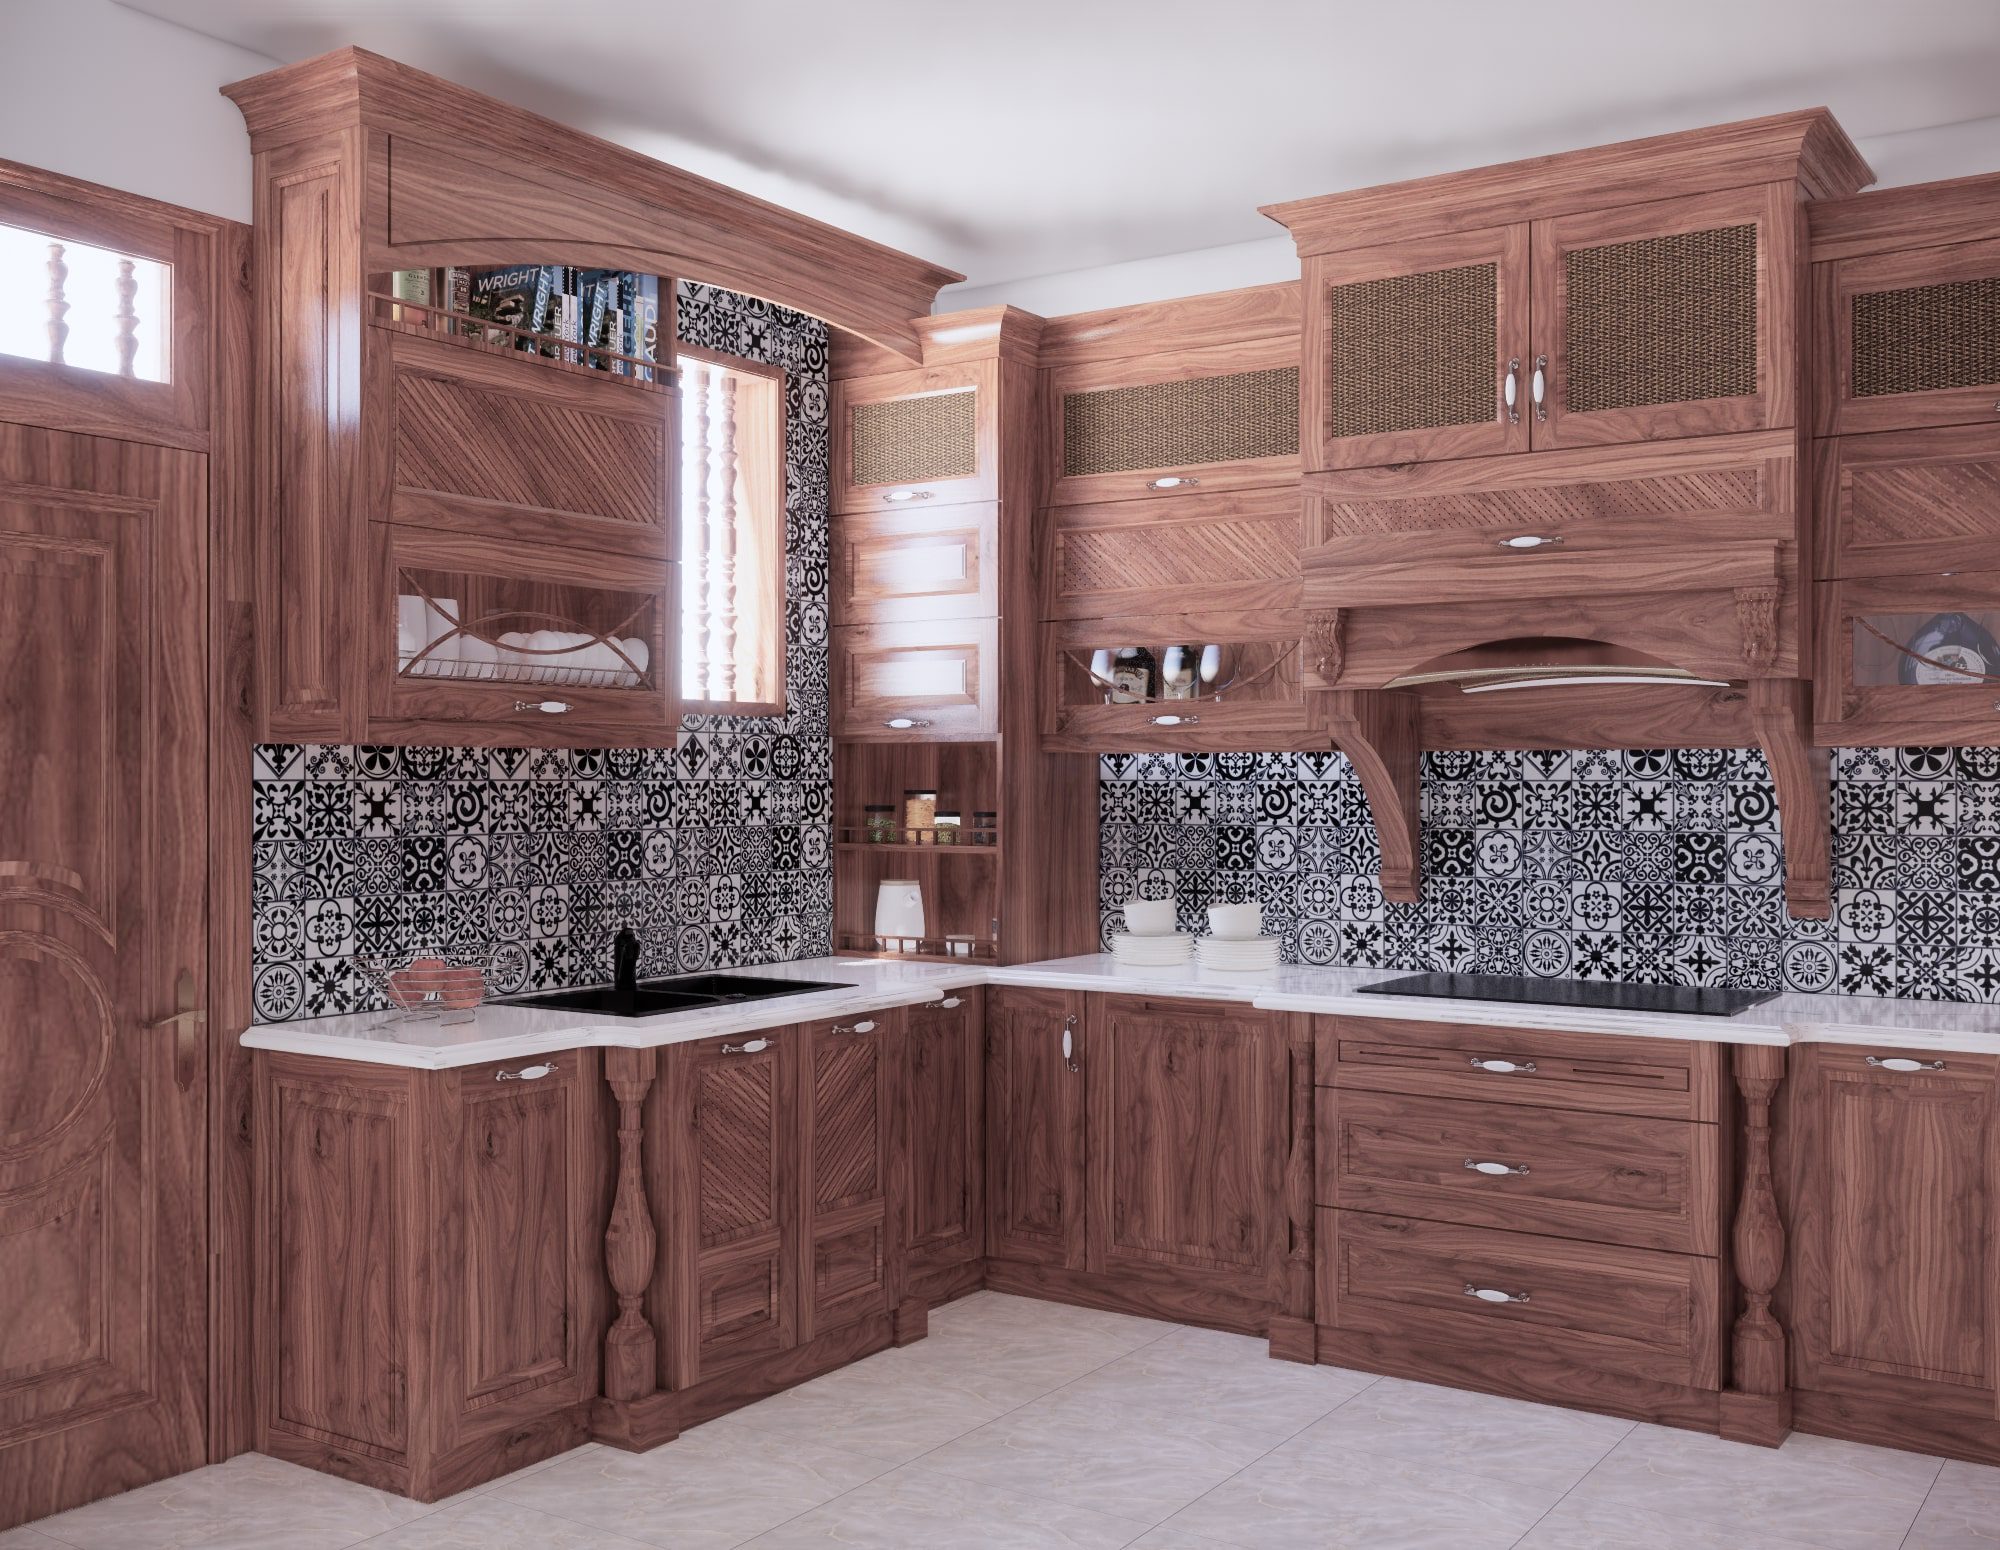 Tại sao nên chọn tủ bếp gỗ óc chó cho căn bếp của gia đình?, tủ bếp gỗ tự nhiên, gỗ Sồi Nga